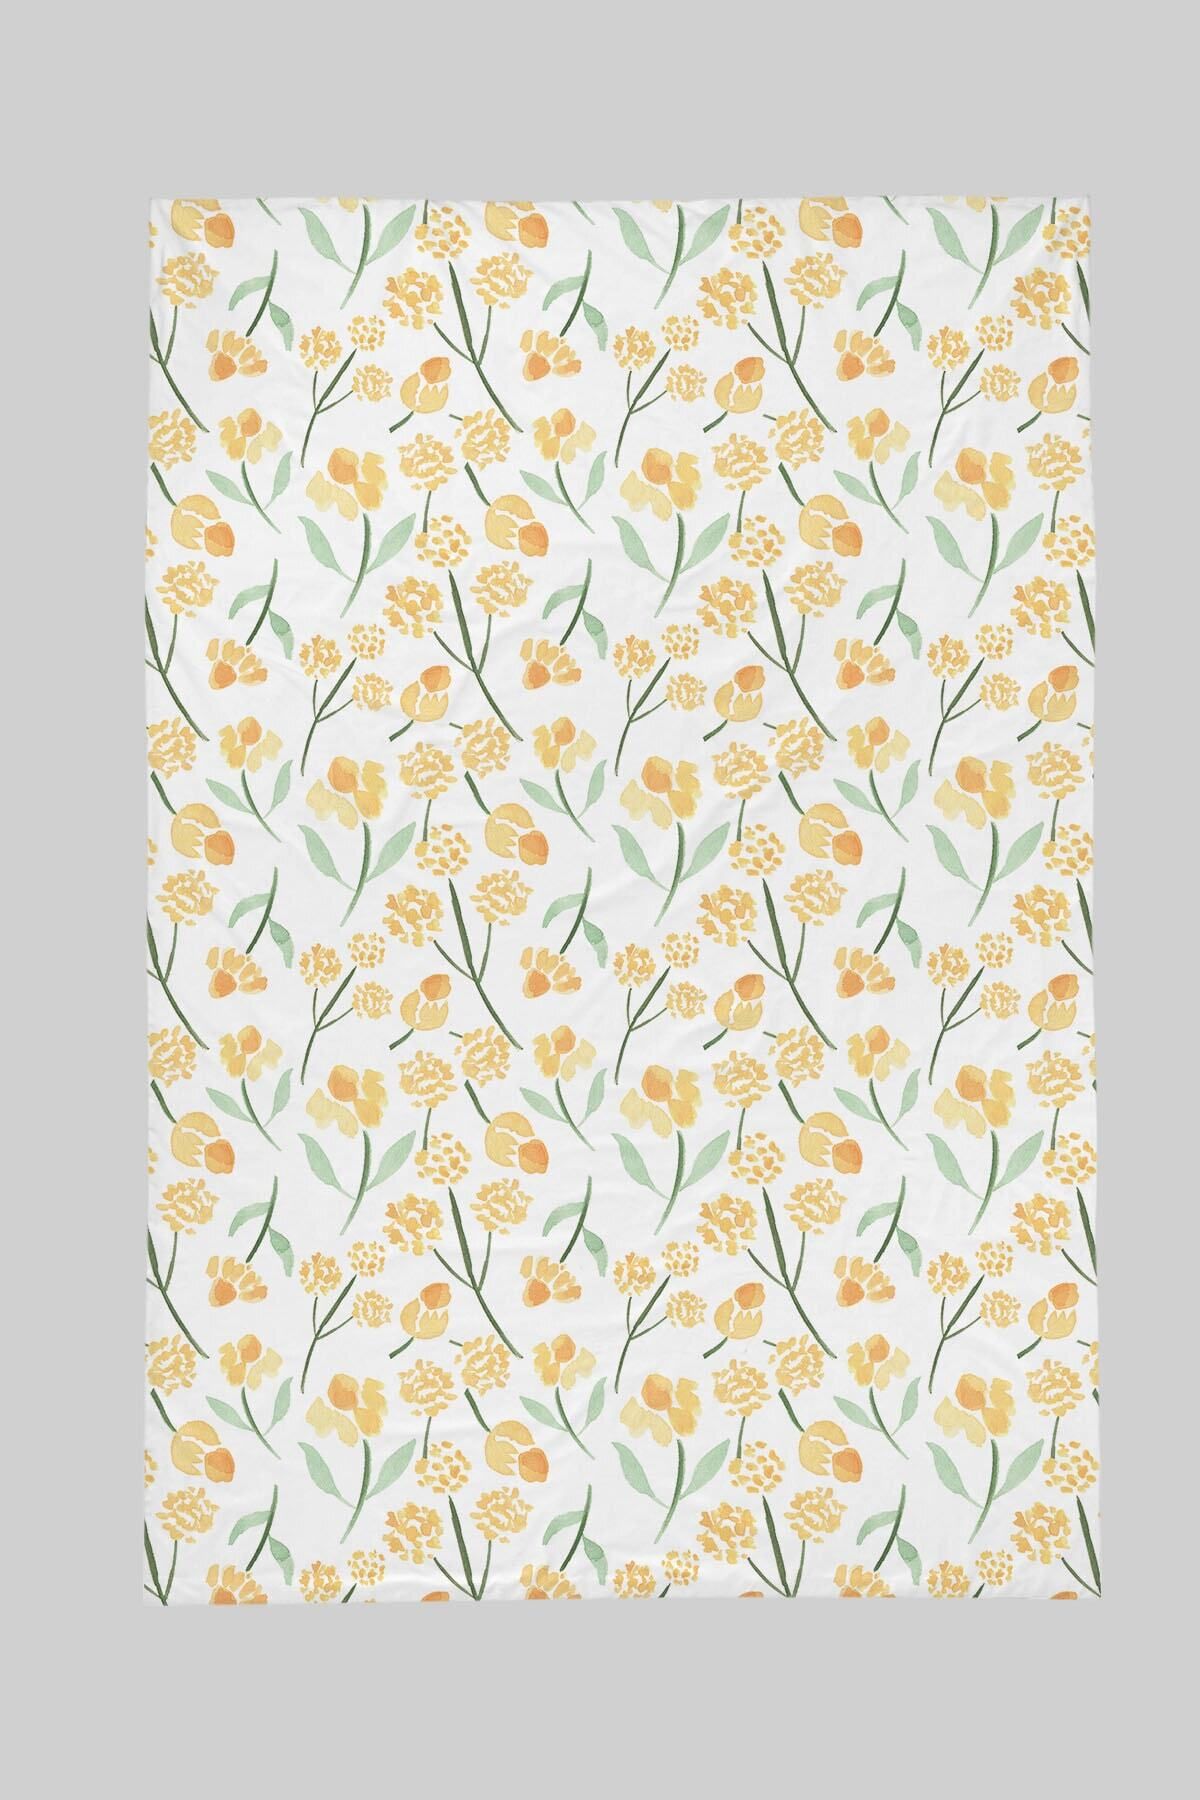 Tuğba Kuğu Baskılı Düz Çarşaf 120x180 - Iconic Serisi - Sarı Bahar Çiçekleri